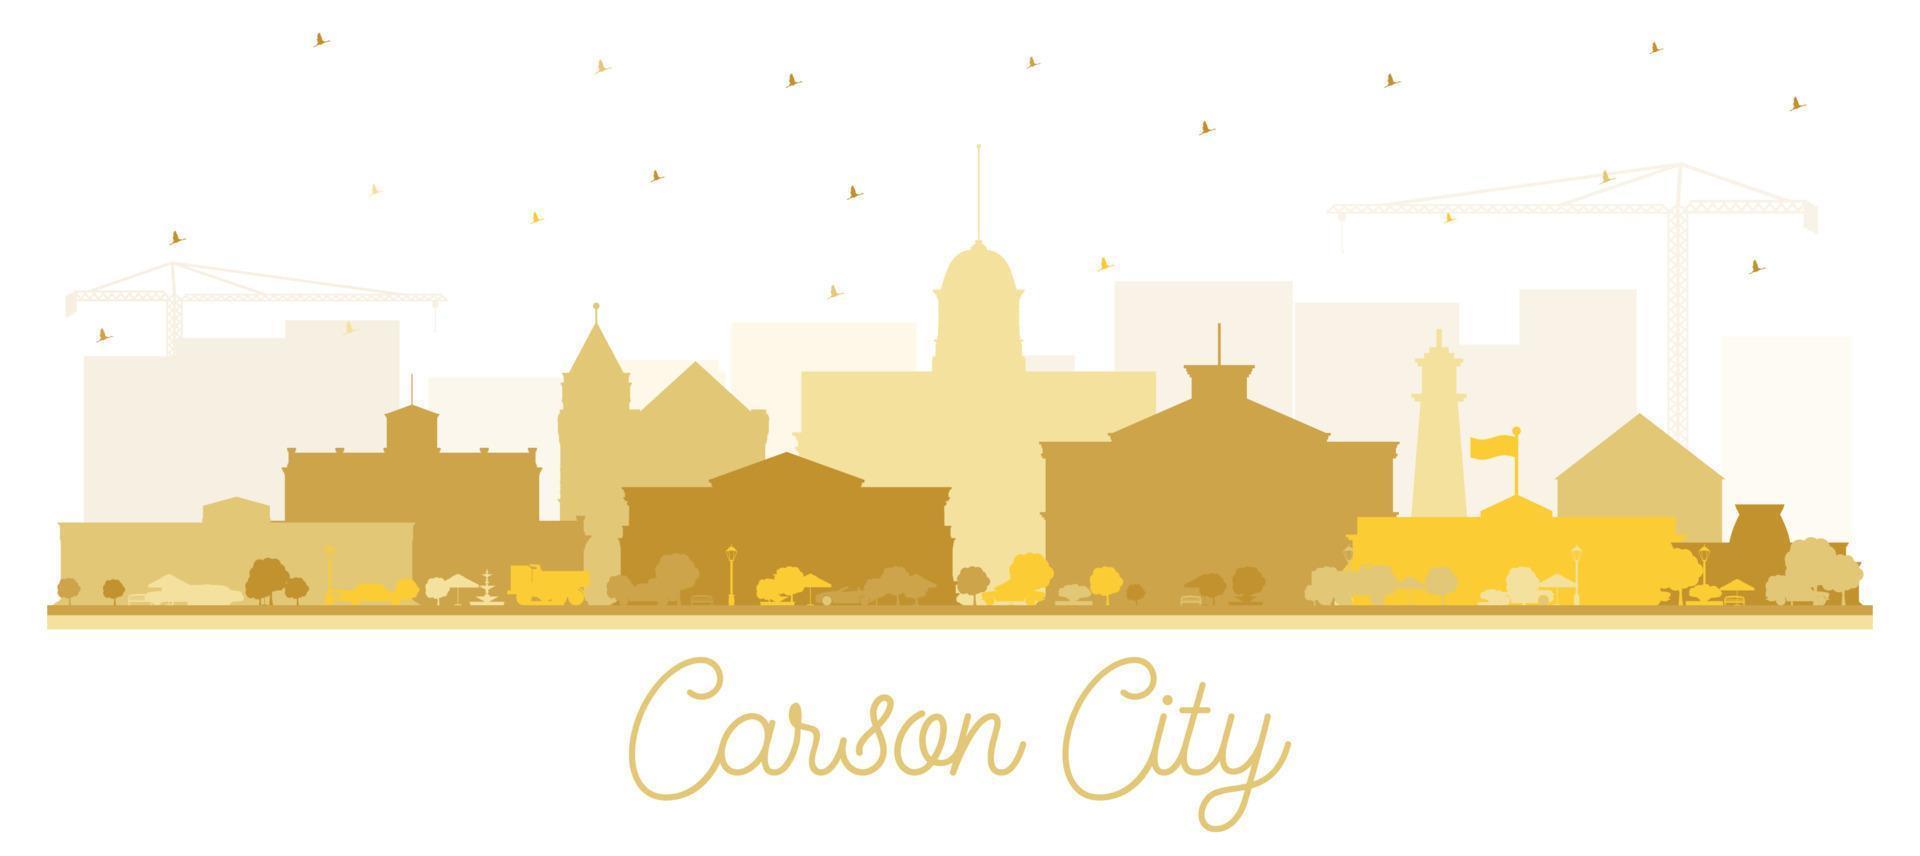 carson city nevada city skyline silhouette mit goldenen gebäuden isoliert auf weiß. vektor